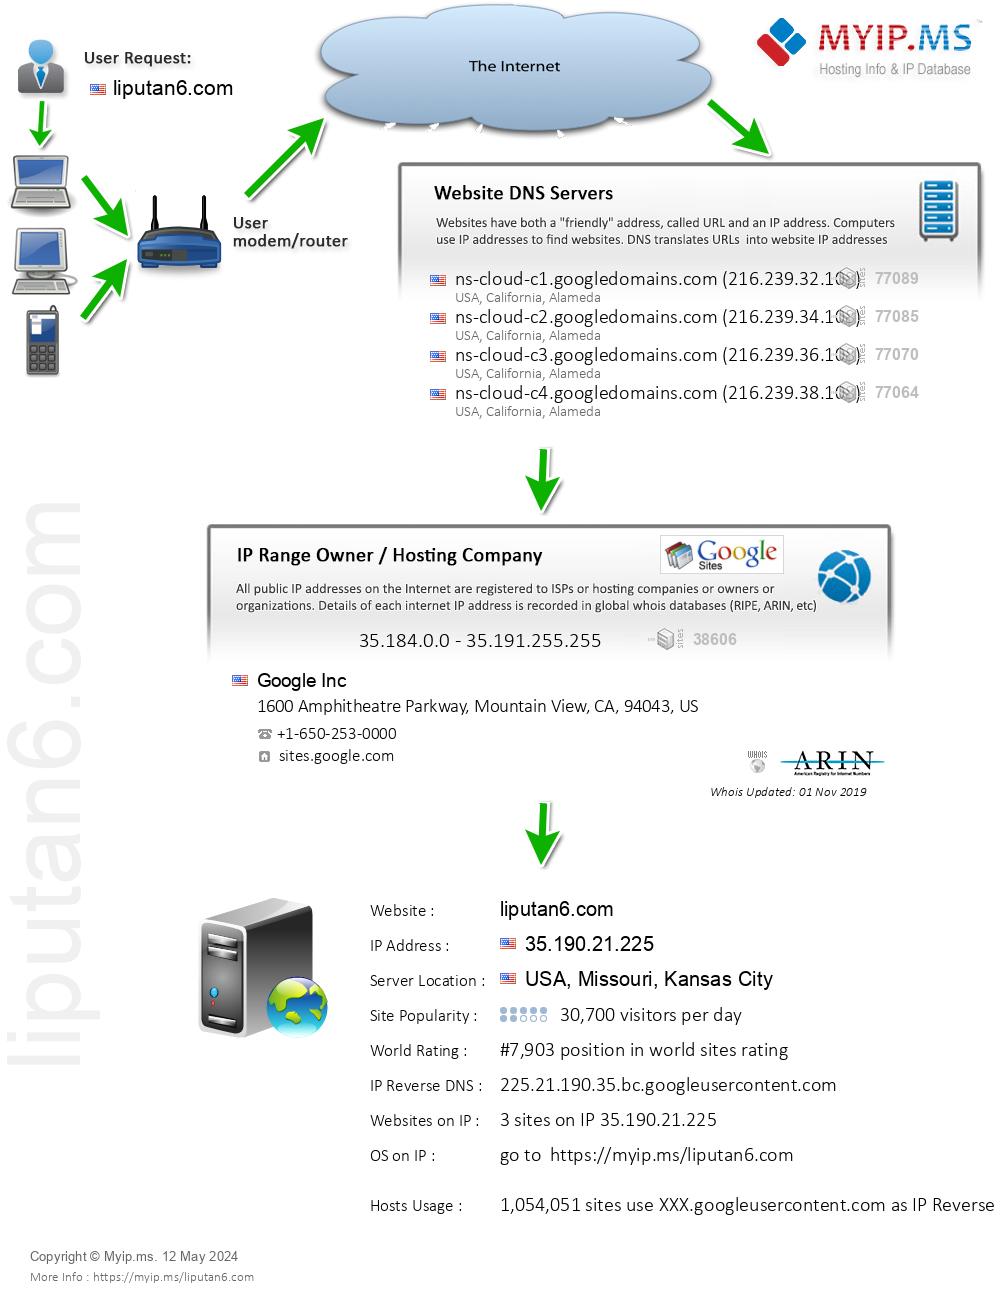 Liputan6.com - Website Hosting Visual IP Diagram